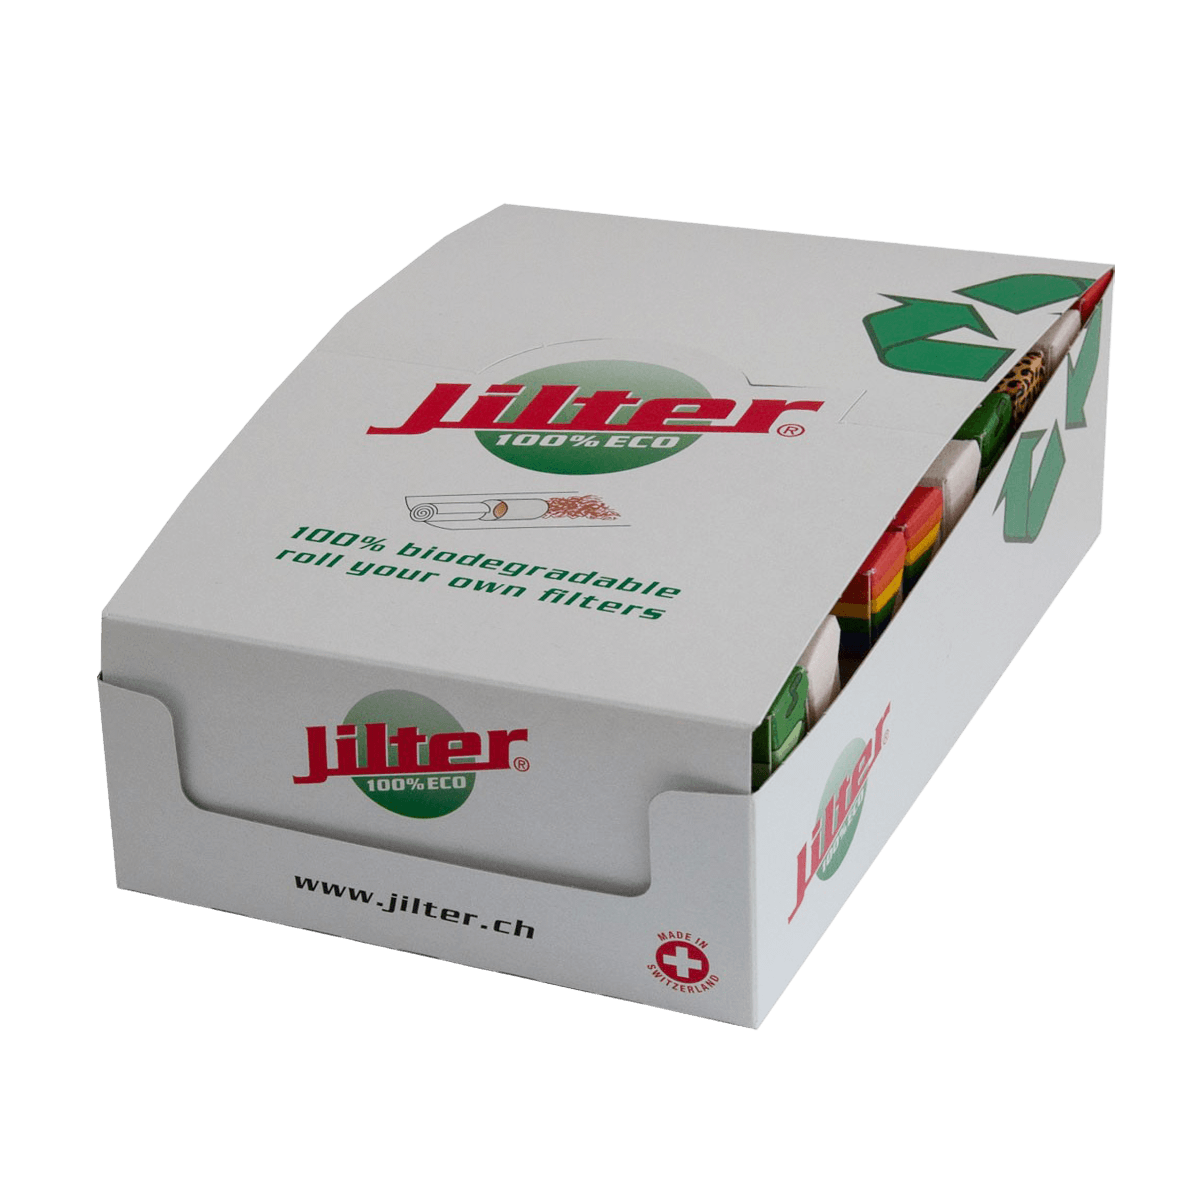 Jilter Box